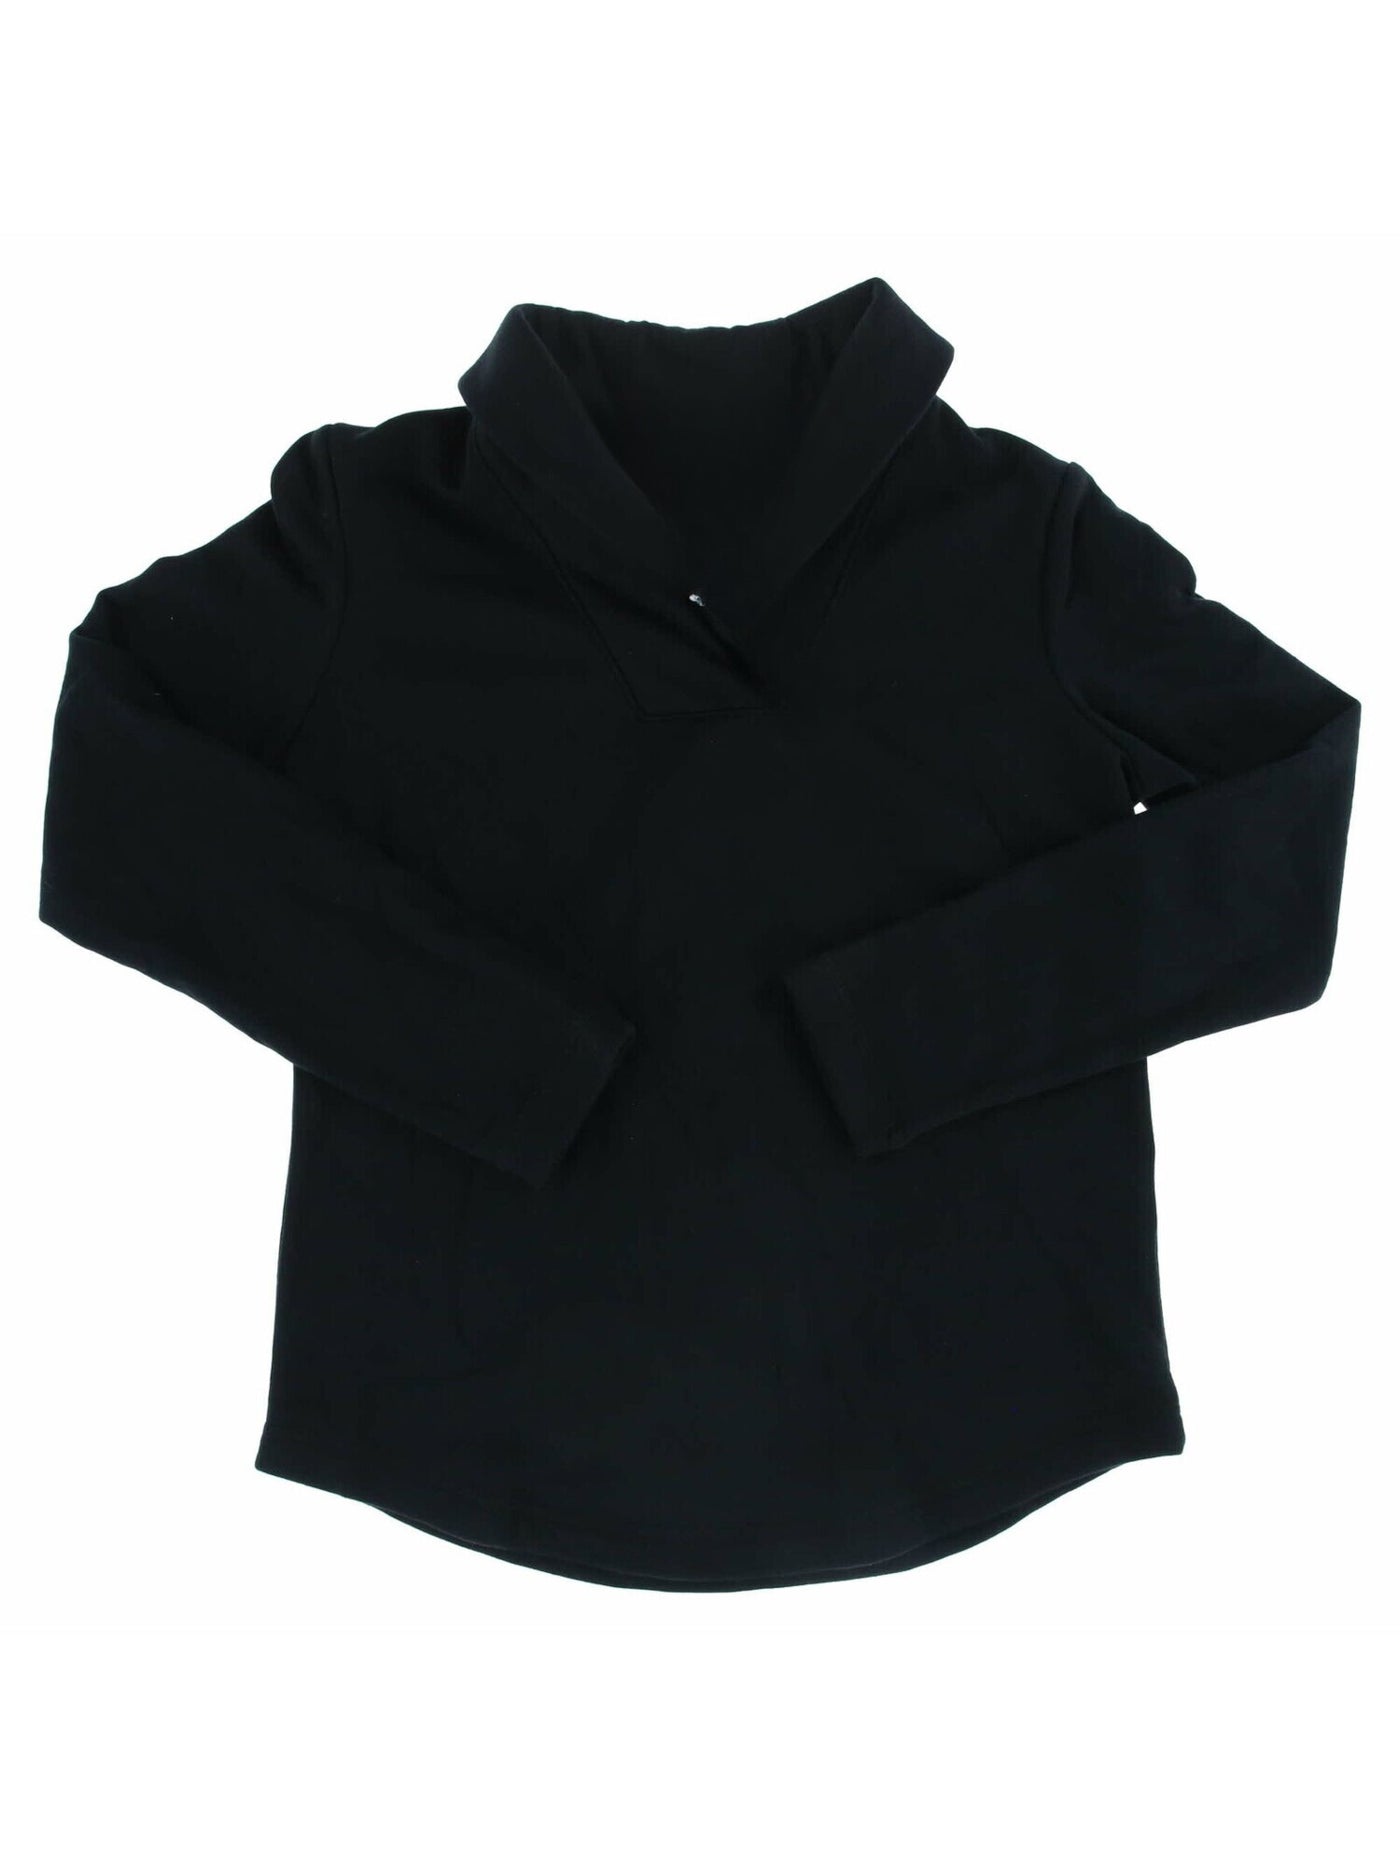 KAREN SCOTT SPORT Womens Black Fleece Long Sleeve Shawl Collar Top M